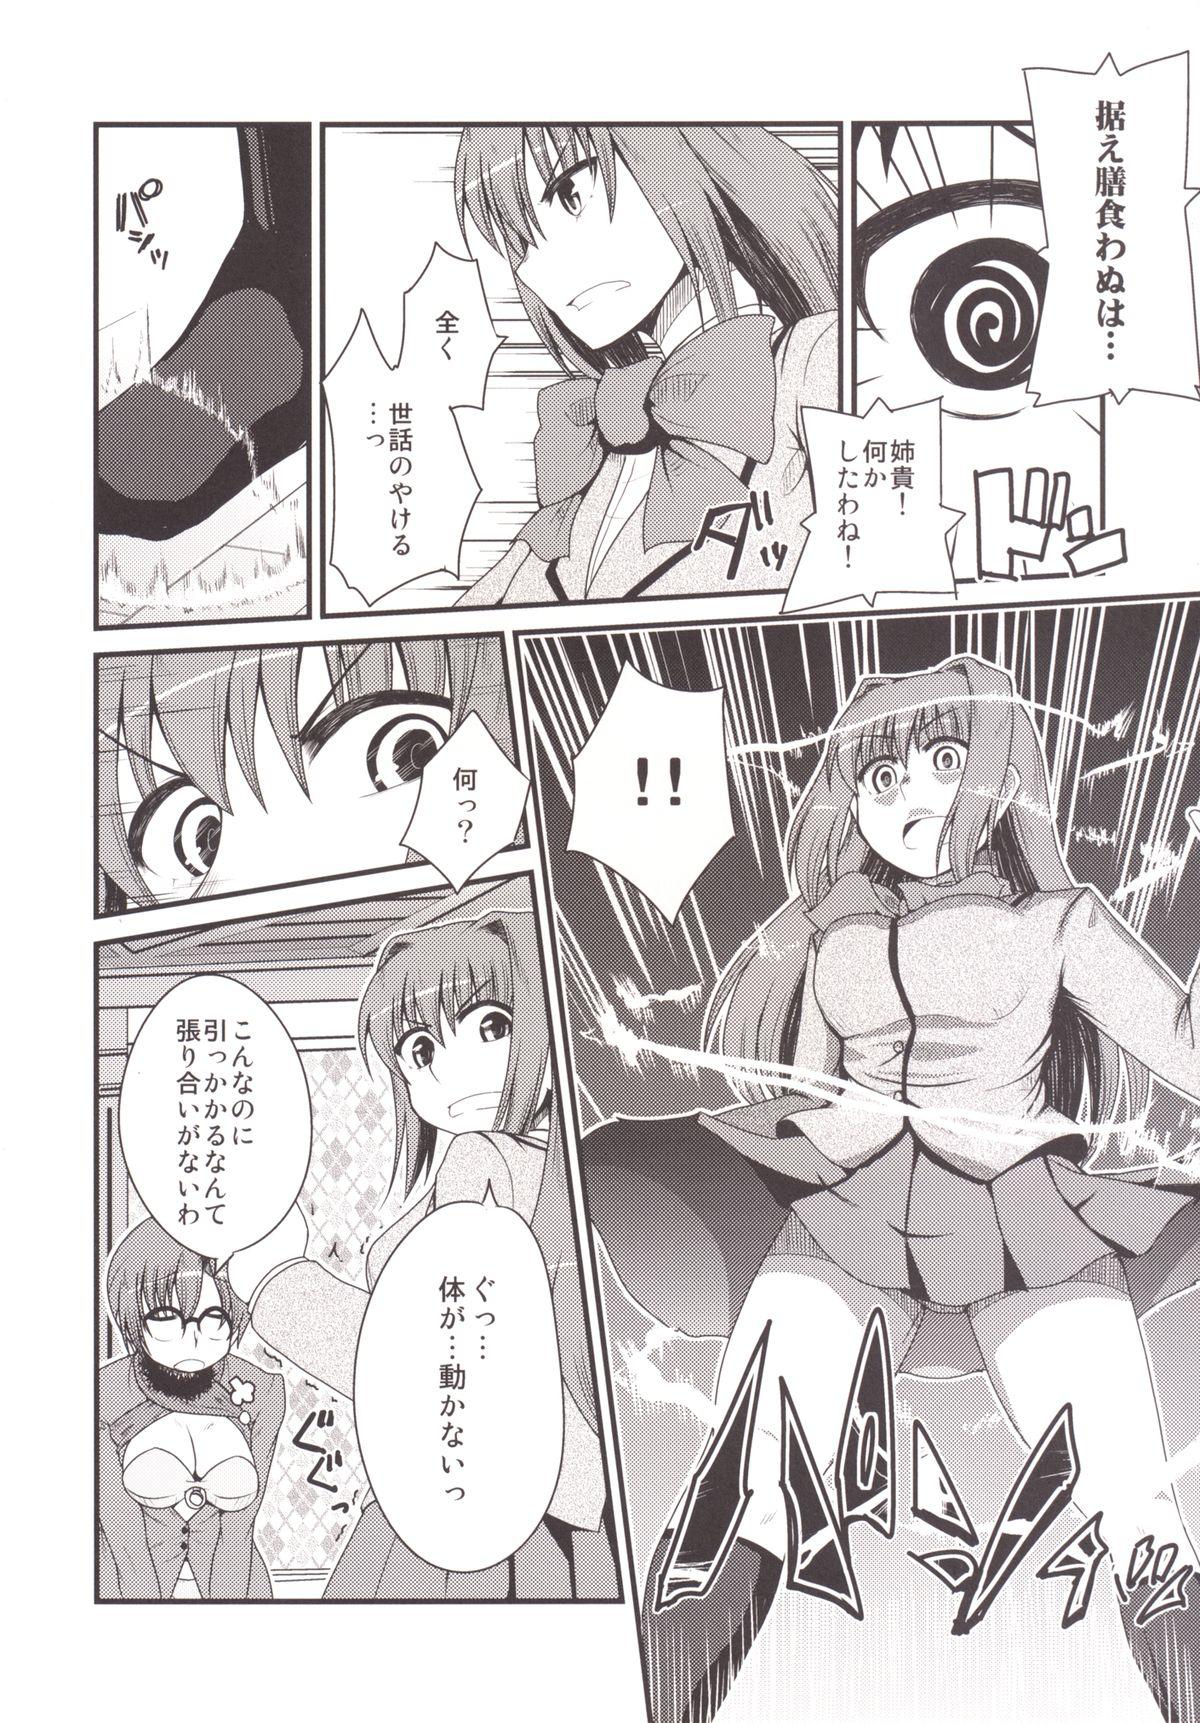 Pareja Ittsu Main 2 - Mahou tsukai no yoru Amateurs - Page 8